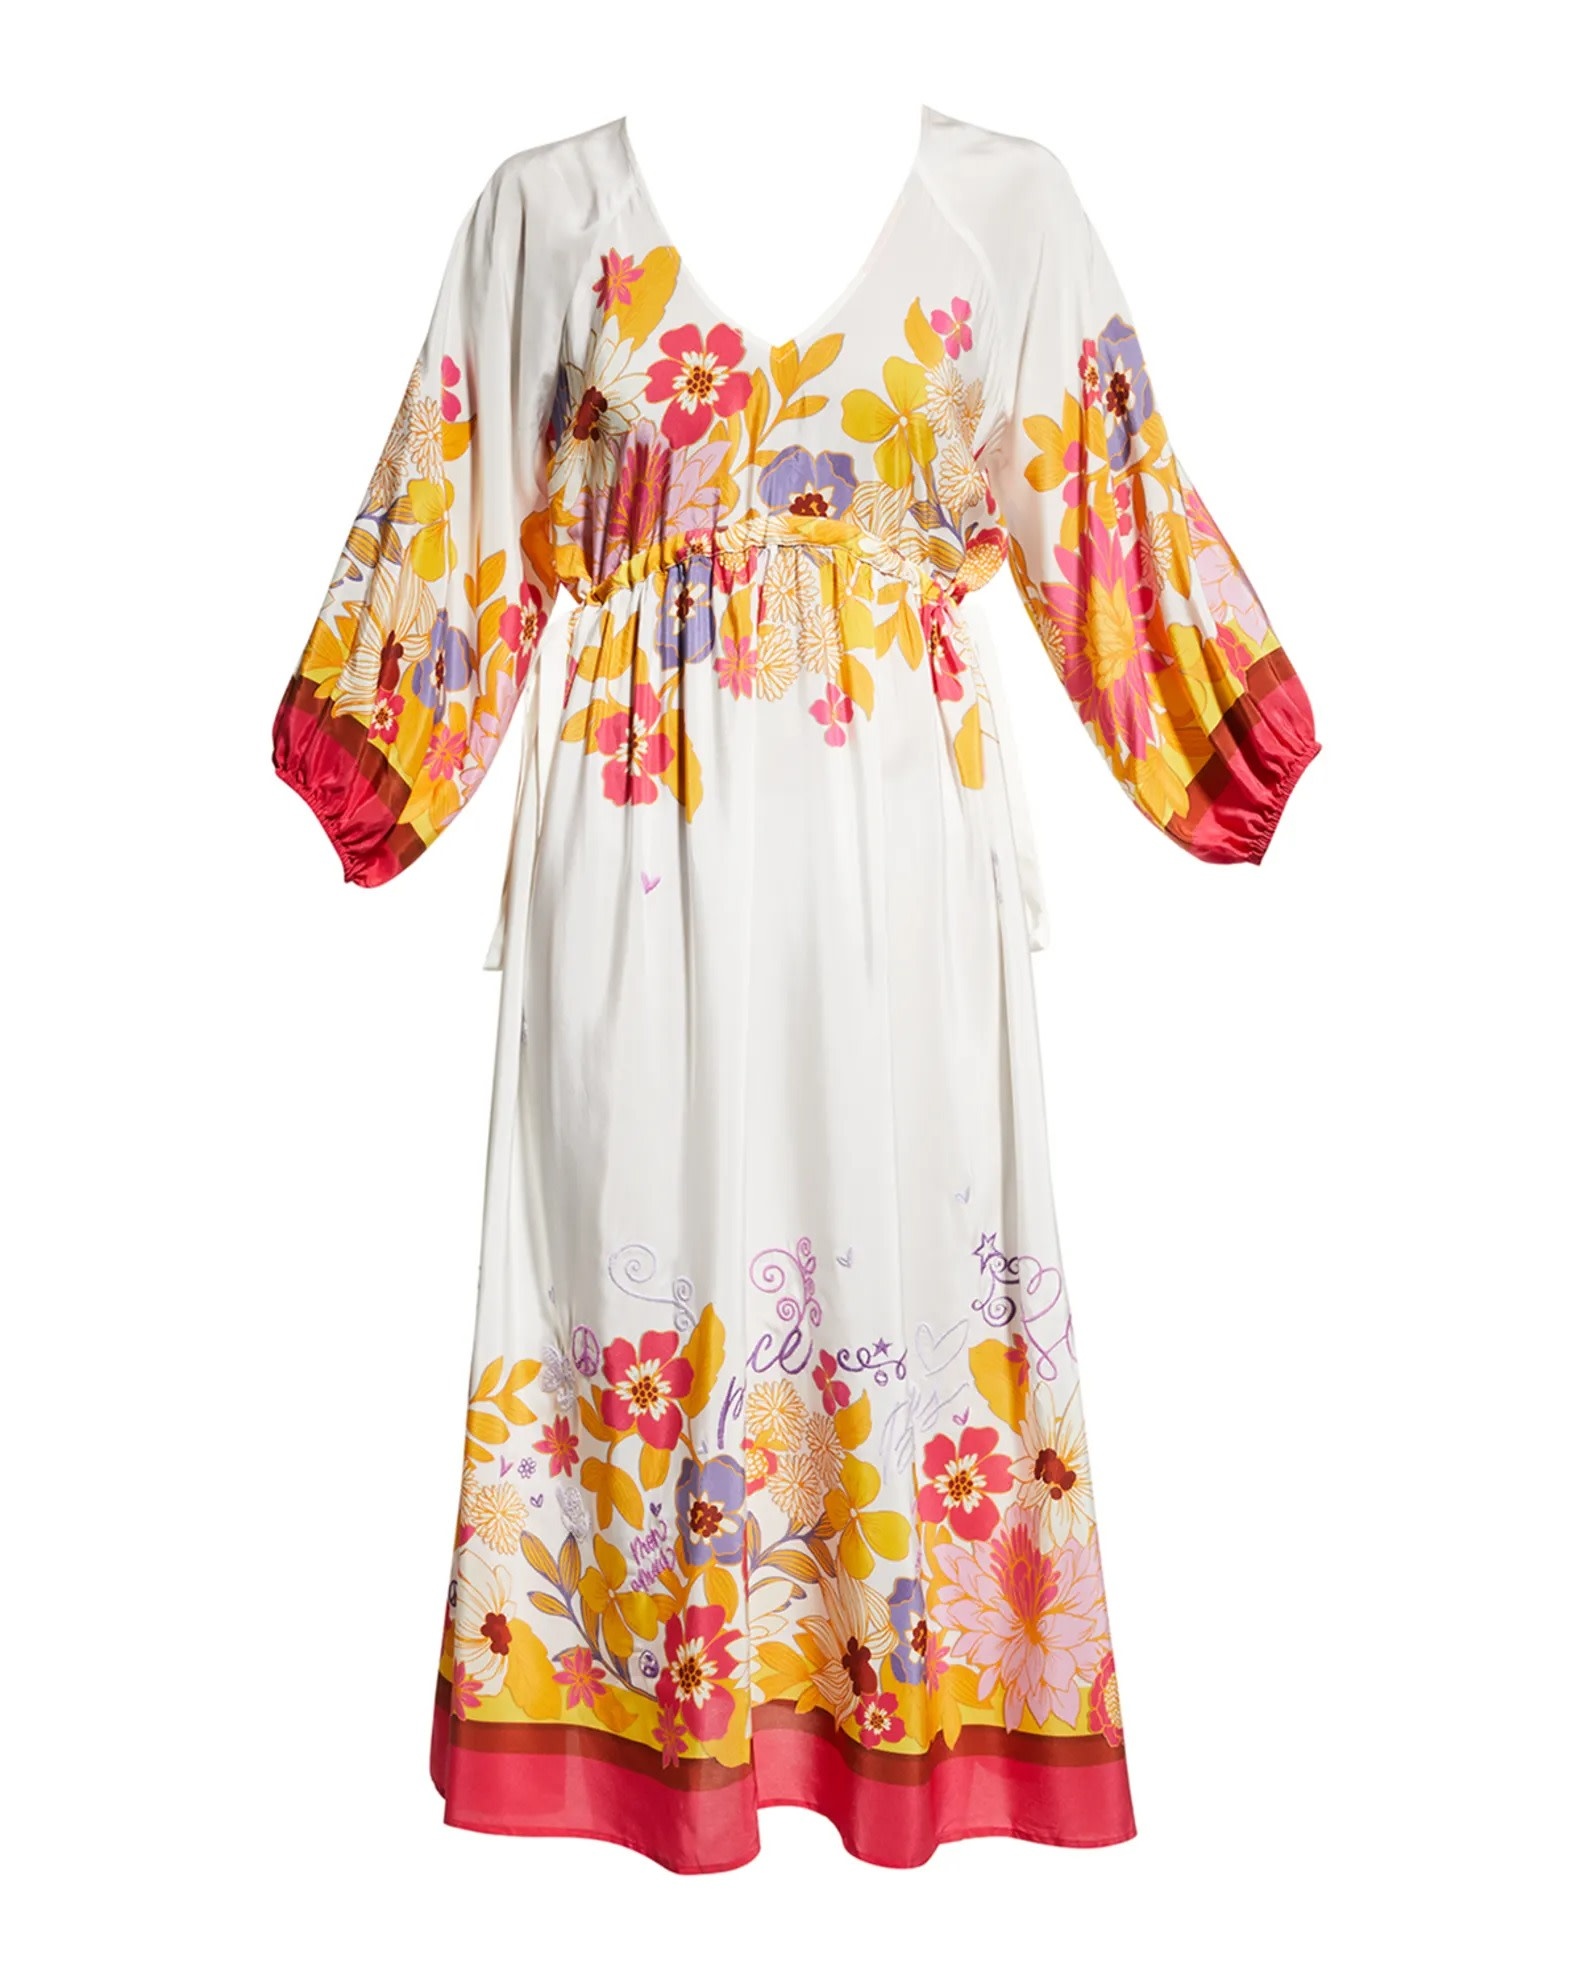 JW Loreli Midi Dress - Squash Blossom Boutique